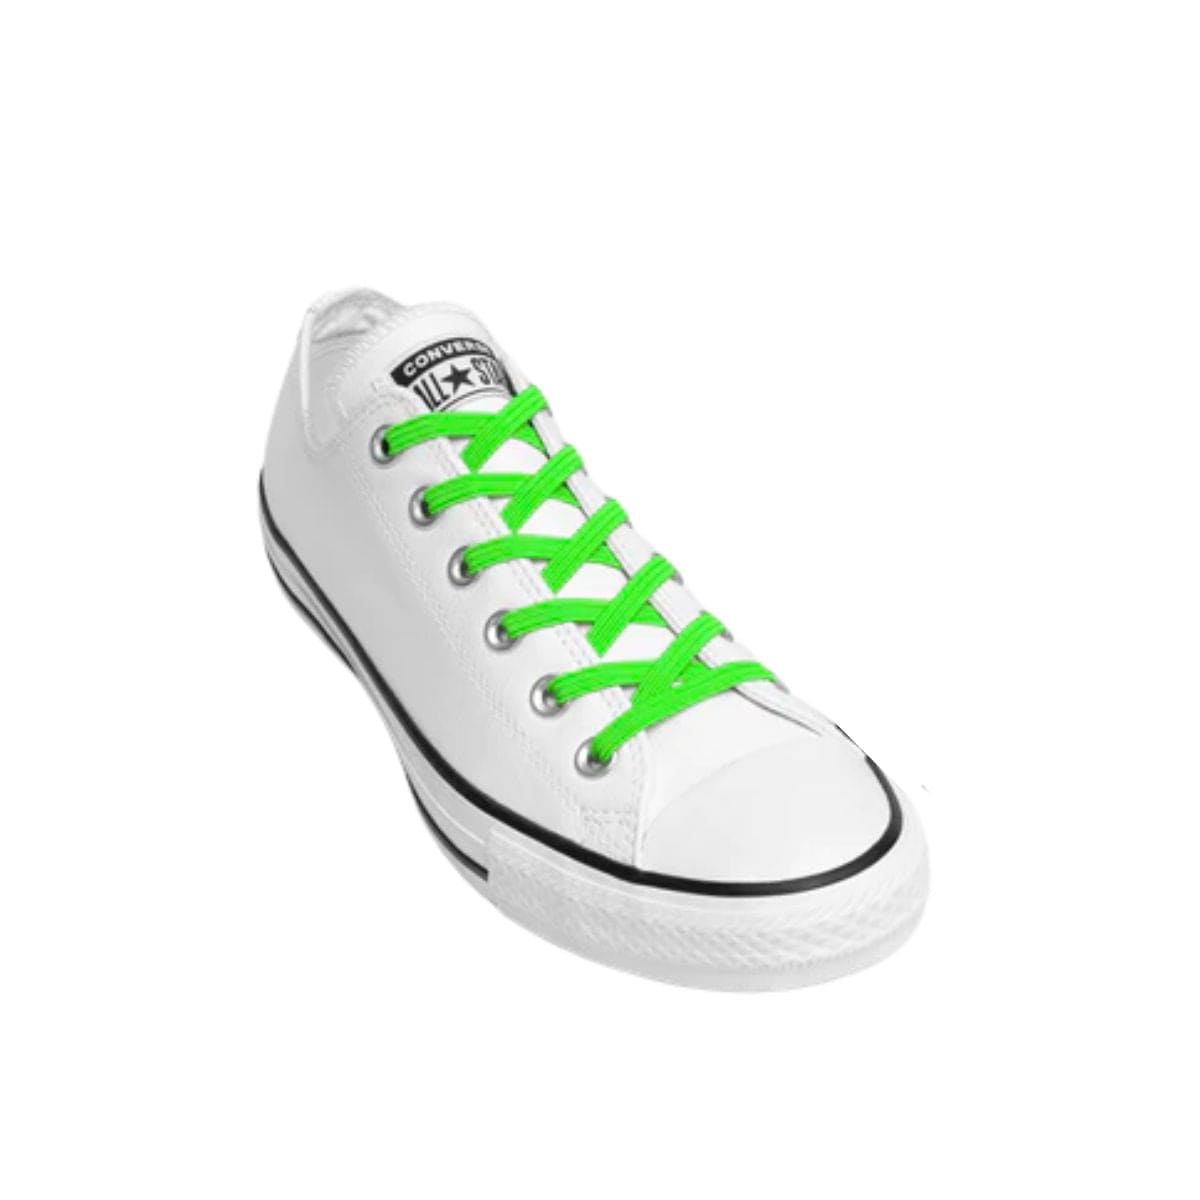 Replacement for Shoe Laces Green No-Tie Shoelaces - Kicks Shoelaces